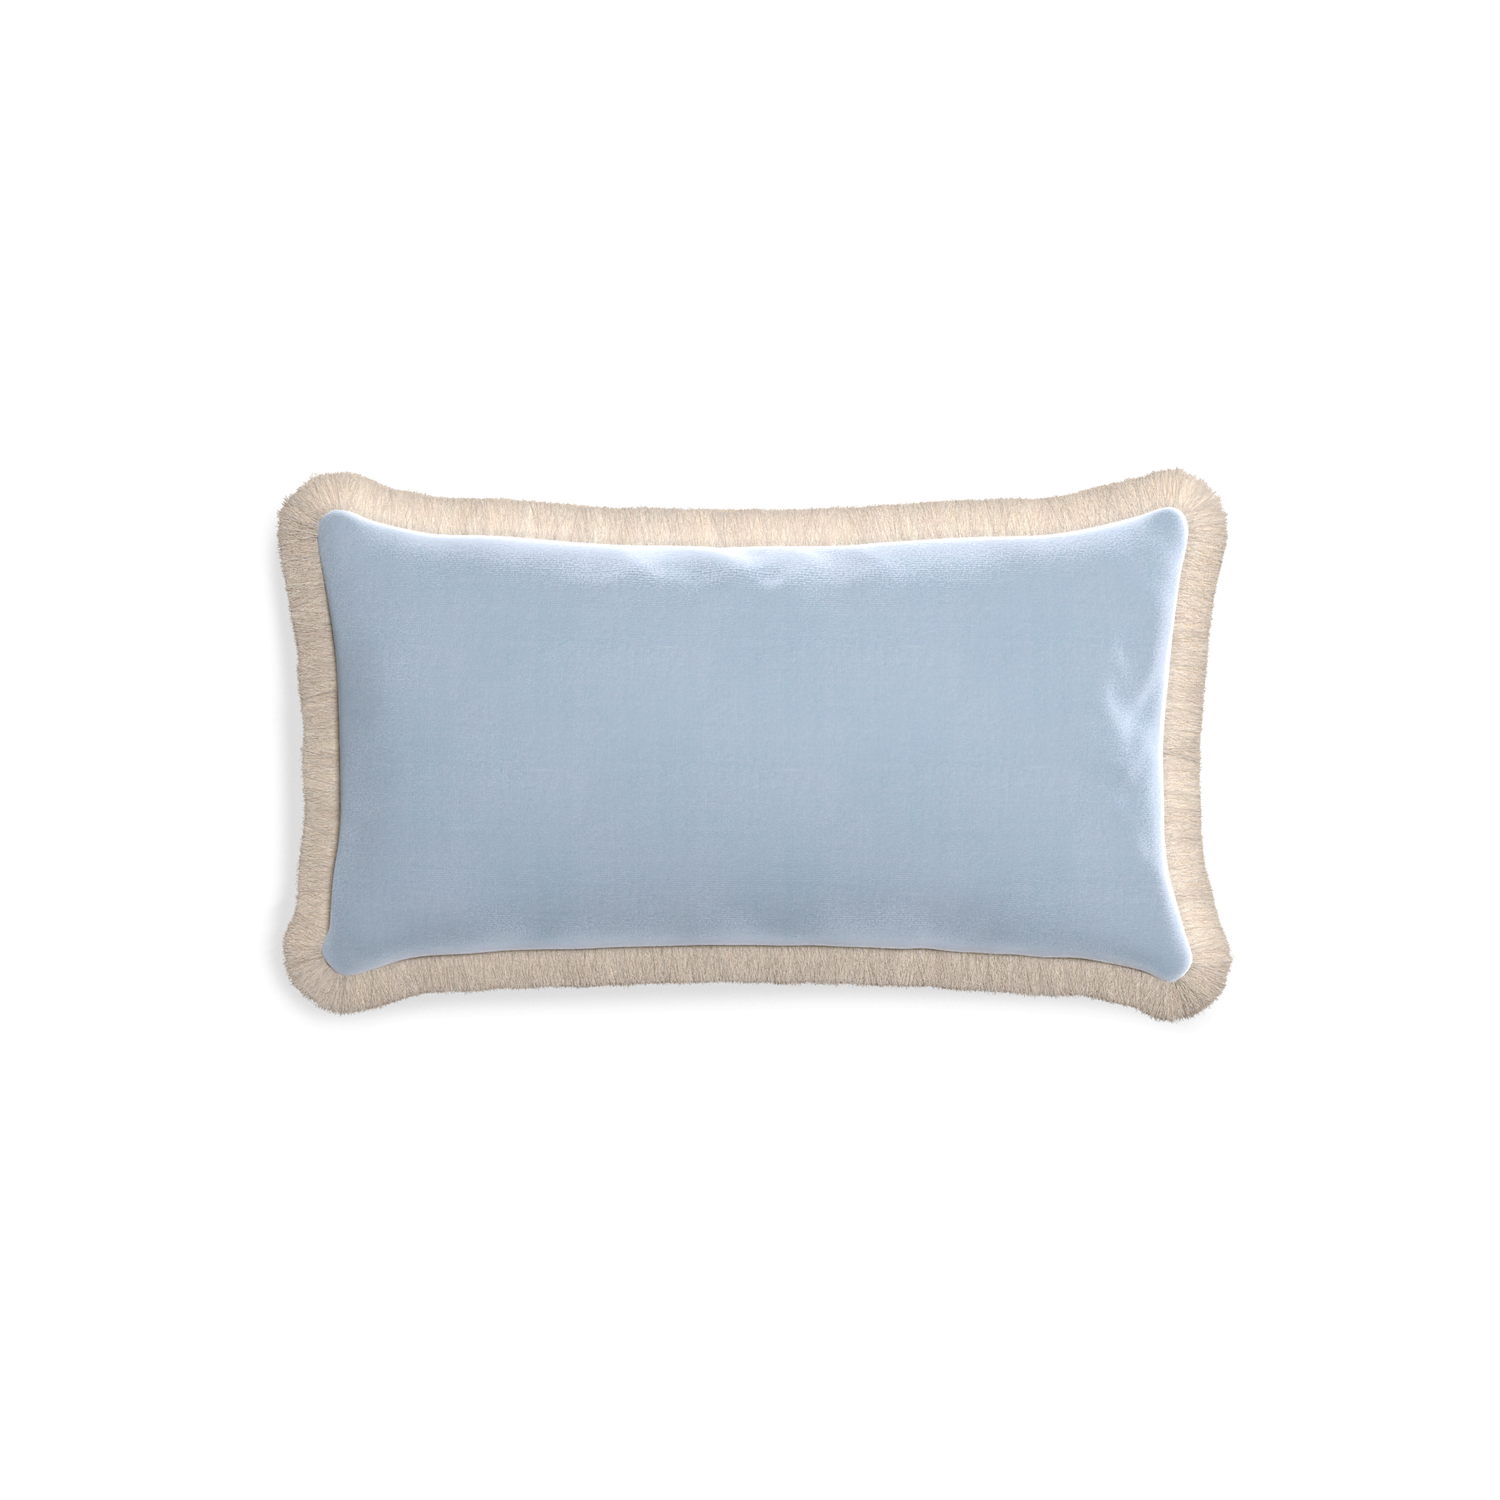 rectangle light blue velvet pillow with cream fringe 